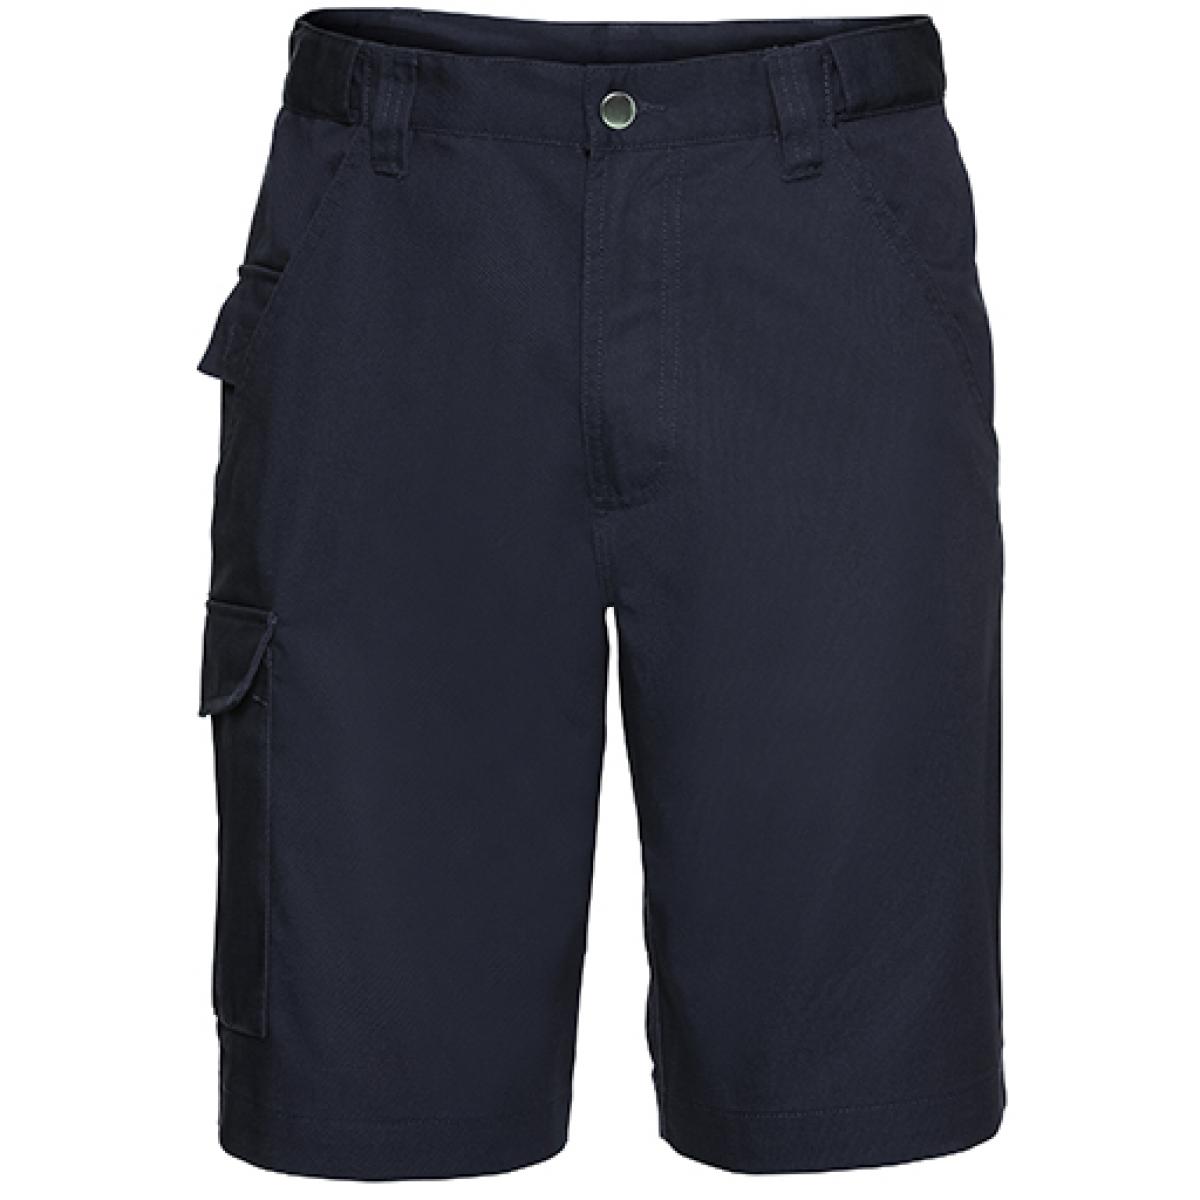 Hersteller: Russell Herstellernummer: R-002M-0 Artikelbezeichnung: Workwear-Shorts aus Polyester-/Baumwoll-Twill Farbe: French Navy